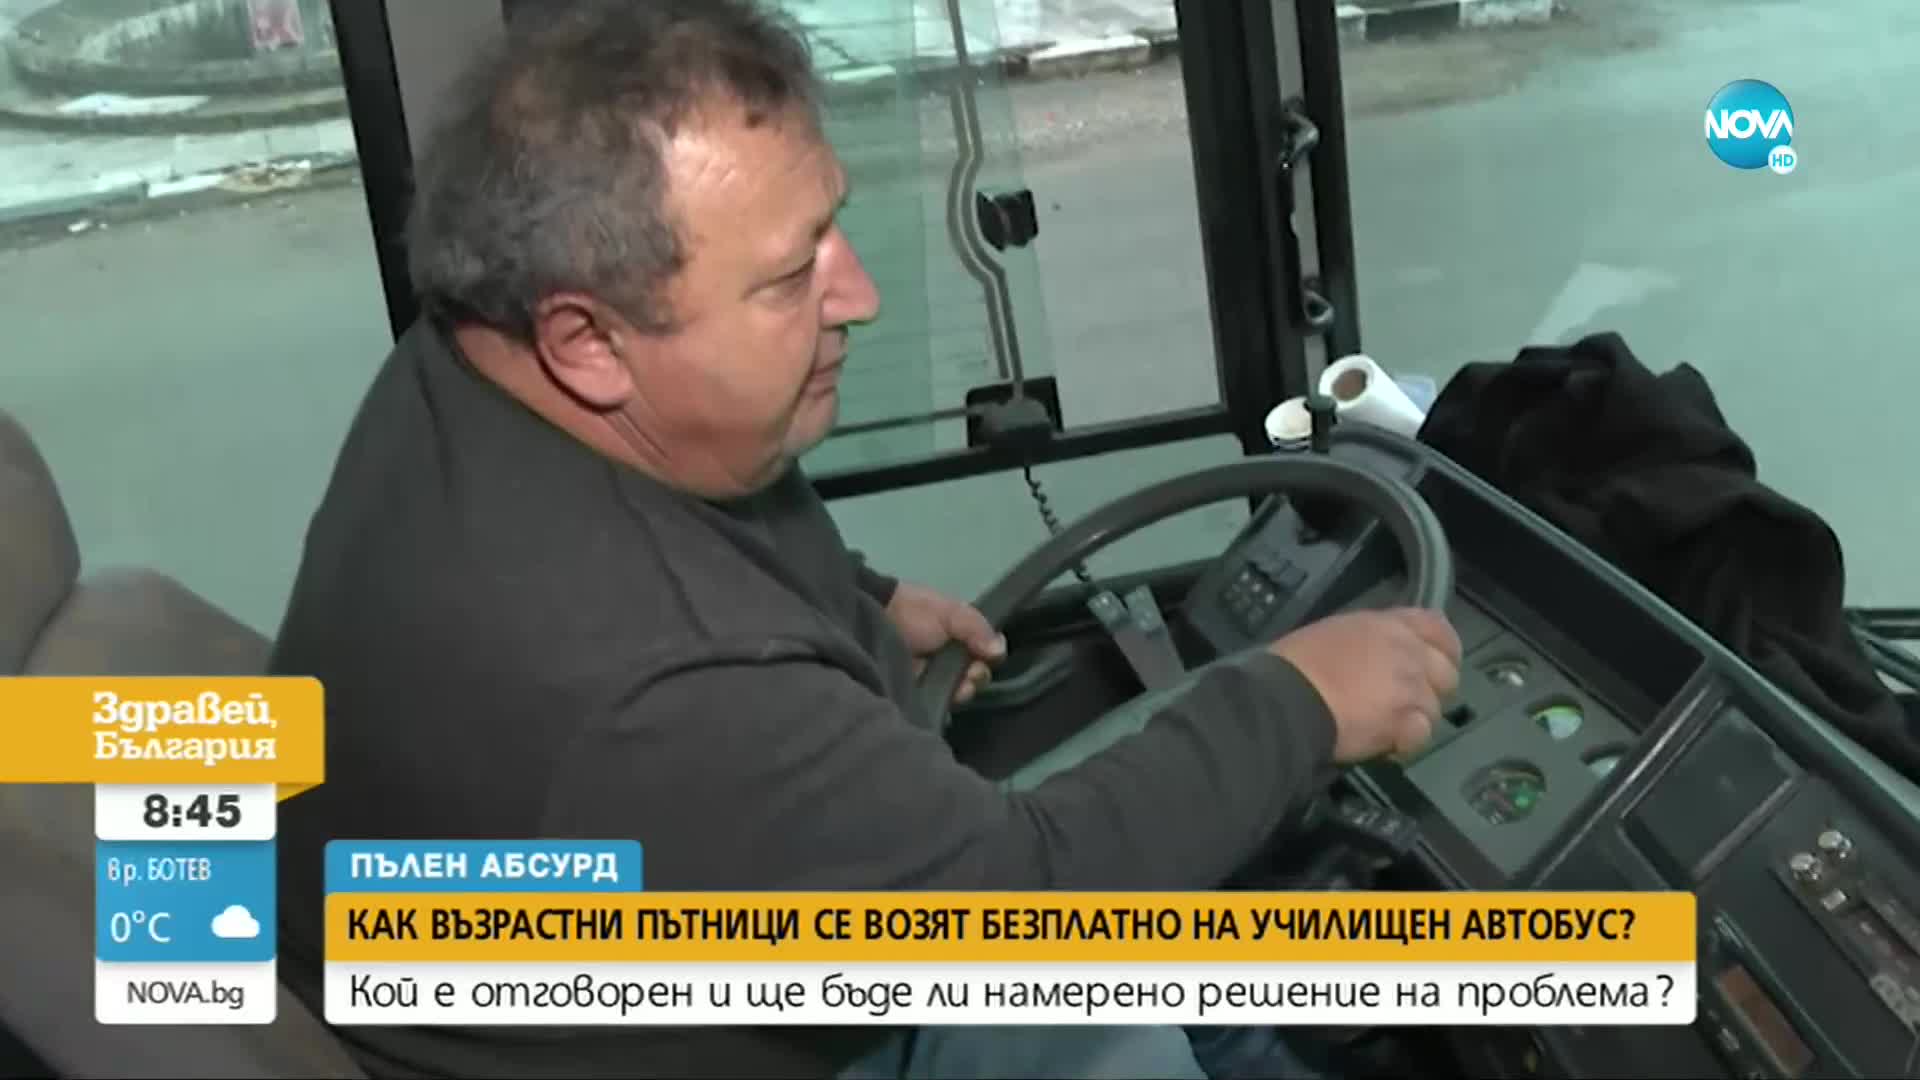 "ПЪЛЕН АБСУРД": Възрастни се возят гратис в ученически автобус